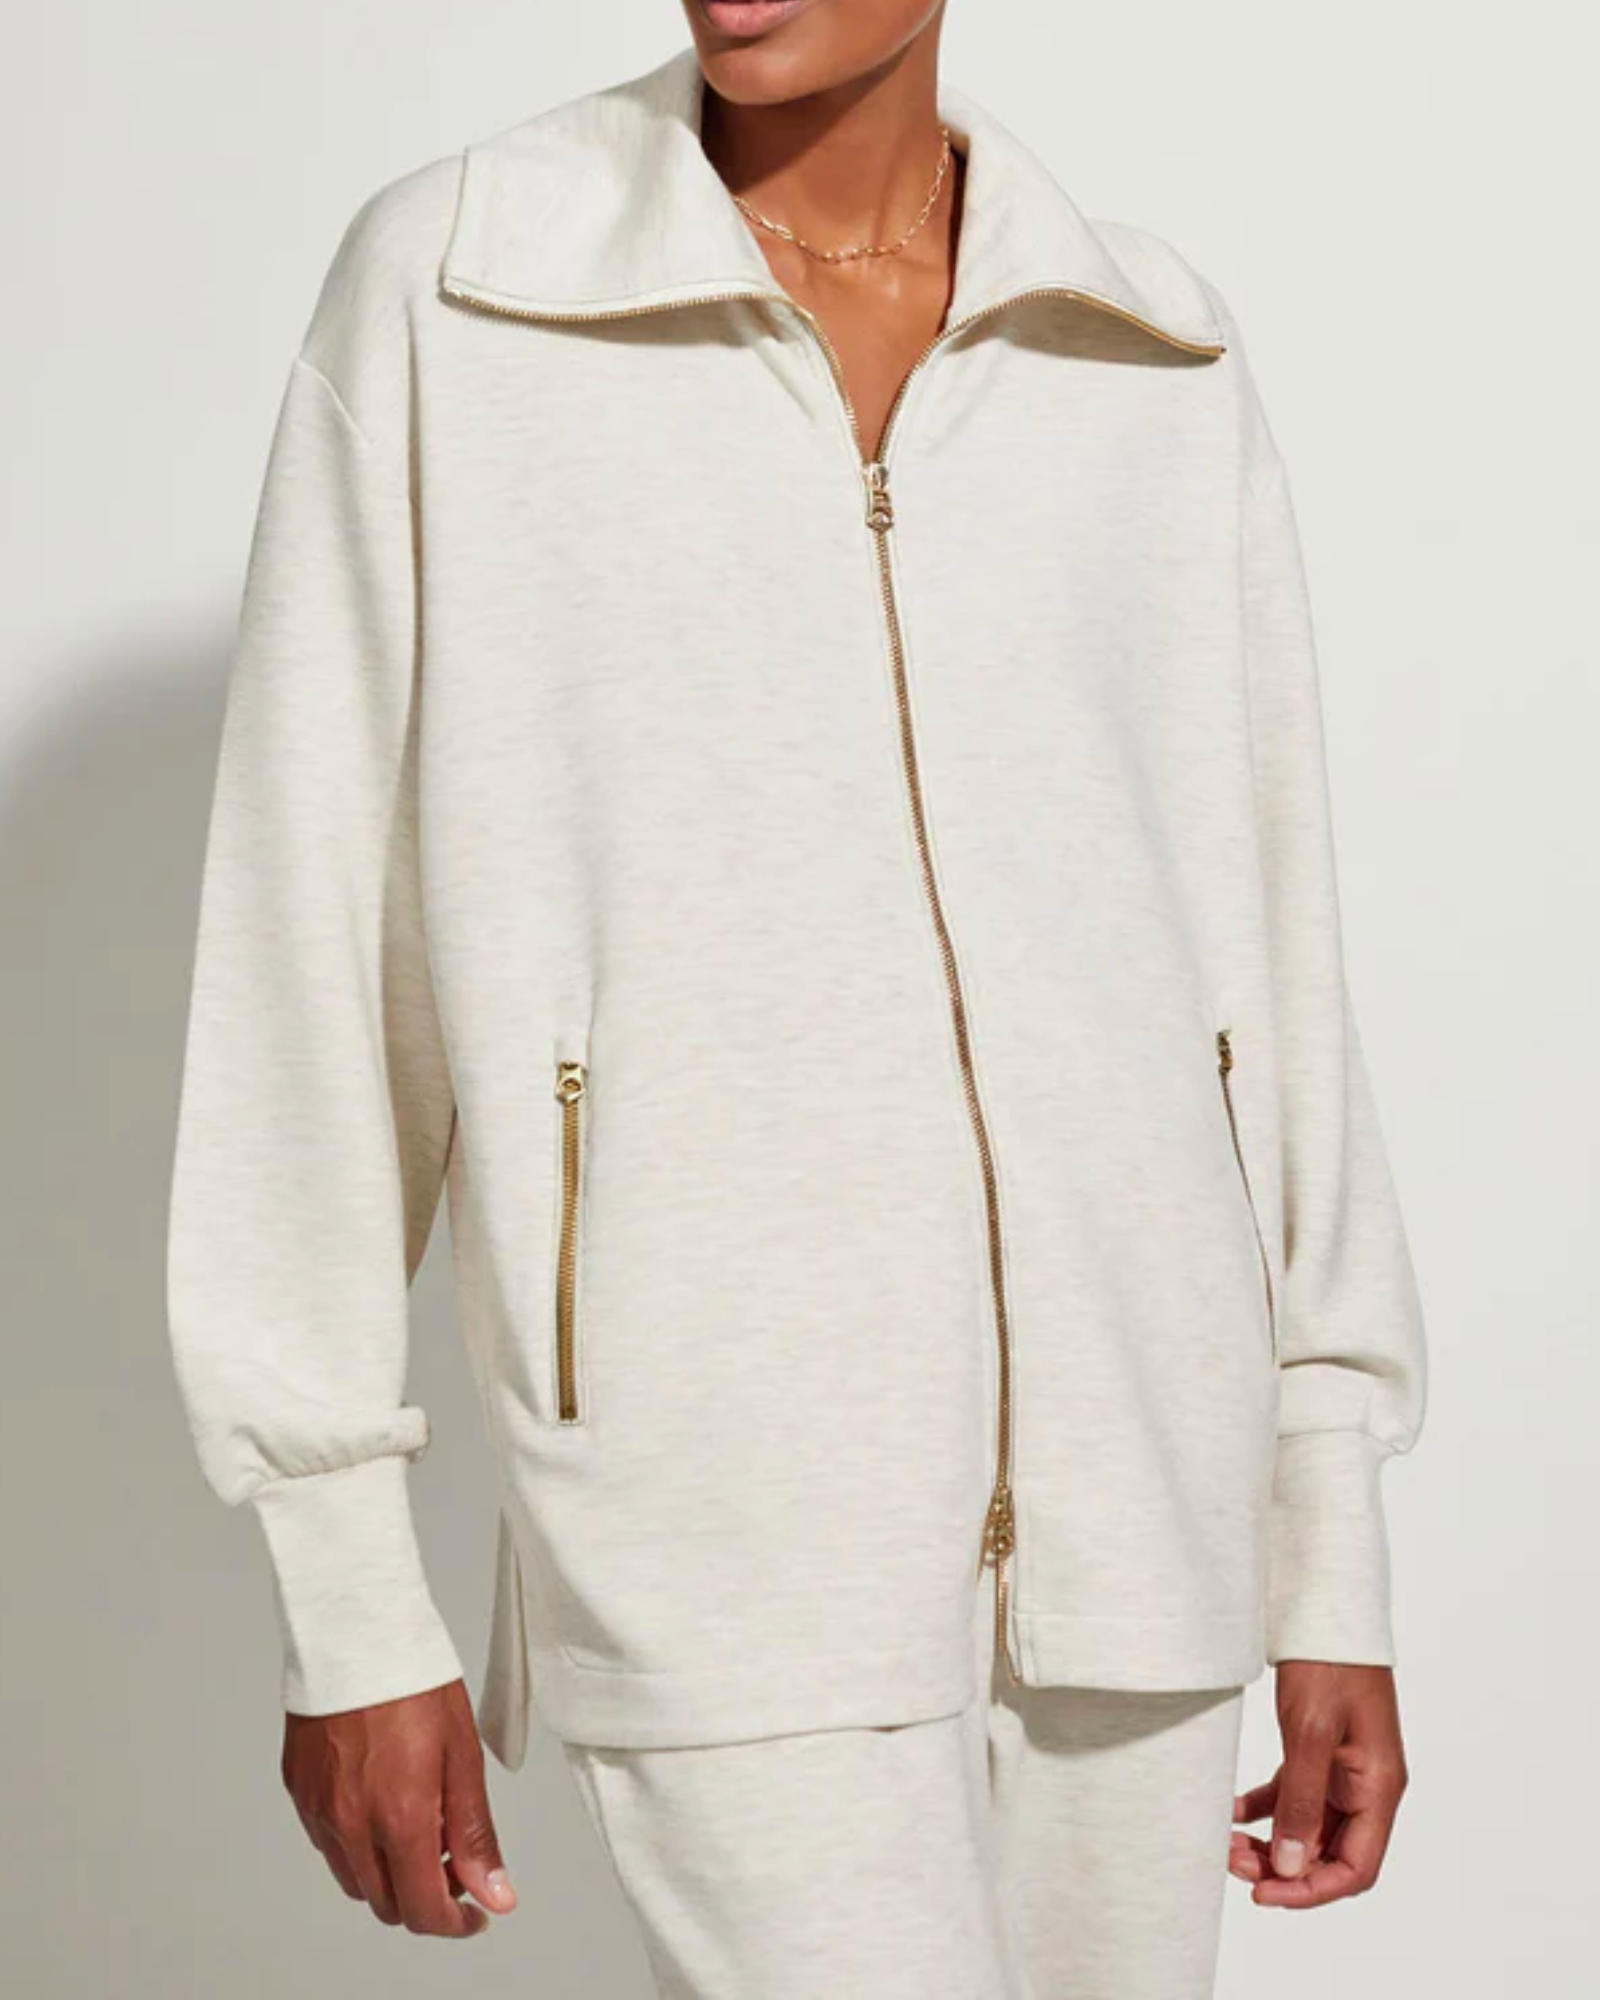 Varley Adair Zip Through Sweatshirt in Ivory Marl